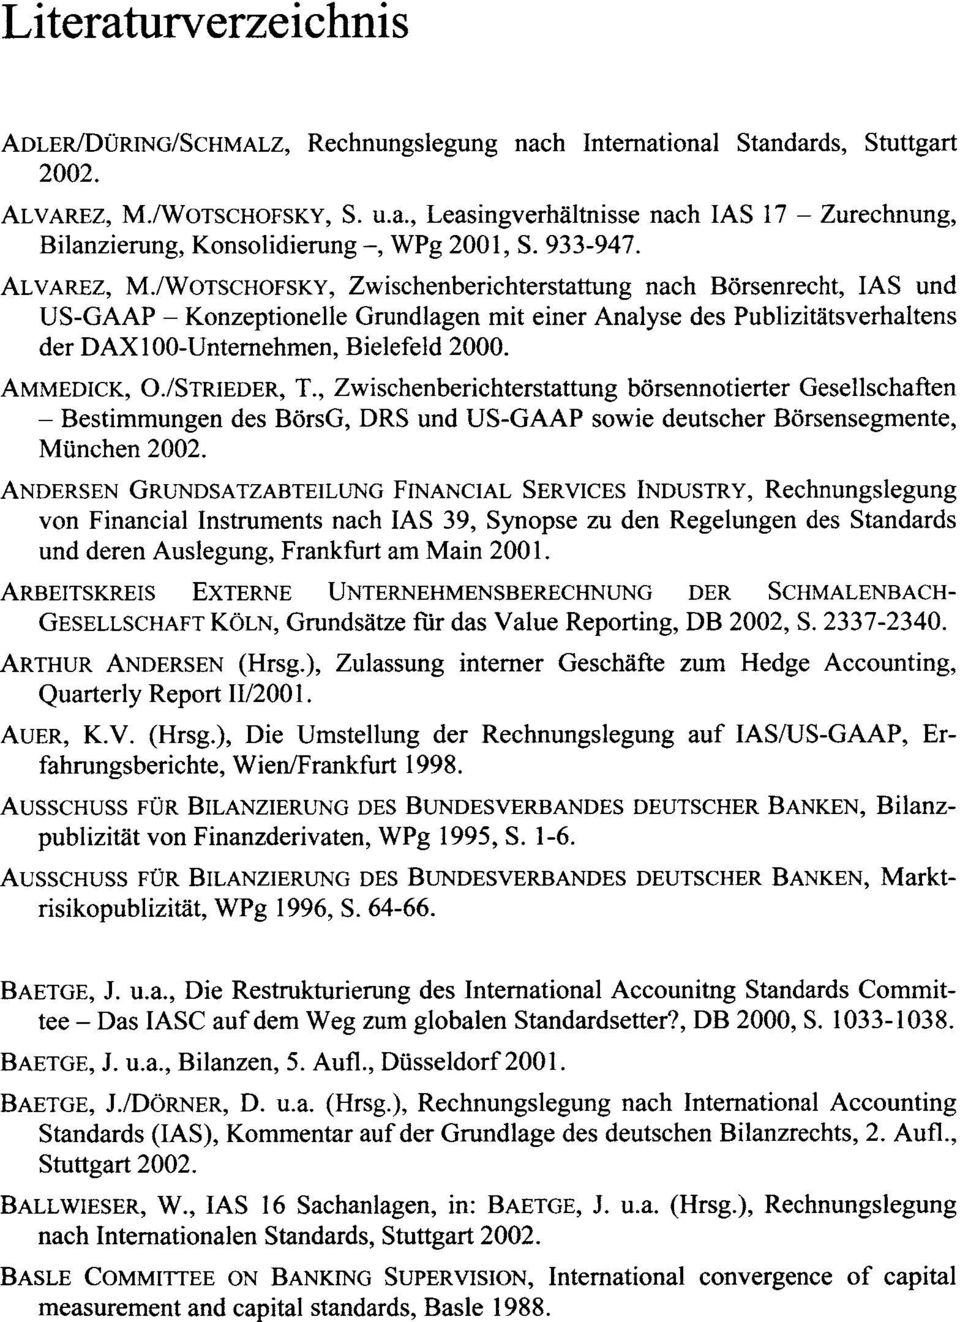 ALVAREZ, M,/WOTSCHOFSKY, Zwischenberichterstattung nach Börsenrecht, las und US-GAAP - Konzeptionelle Grundlagen mit einer Analyse des Publizitätsverhaltens der DAXI00-Unternehmen, Bielefeld 2000.